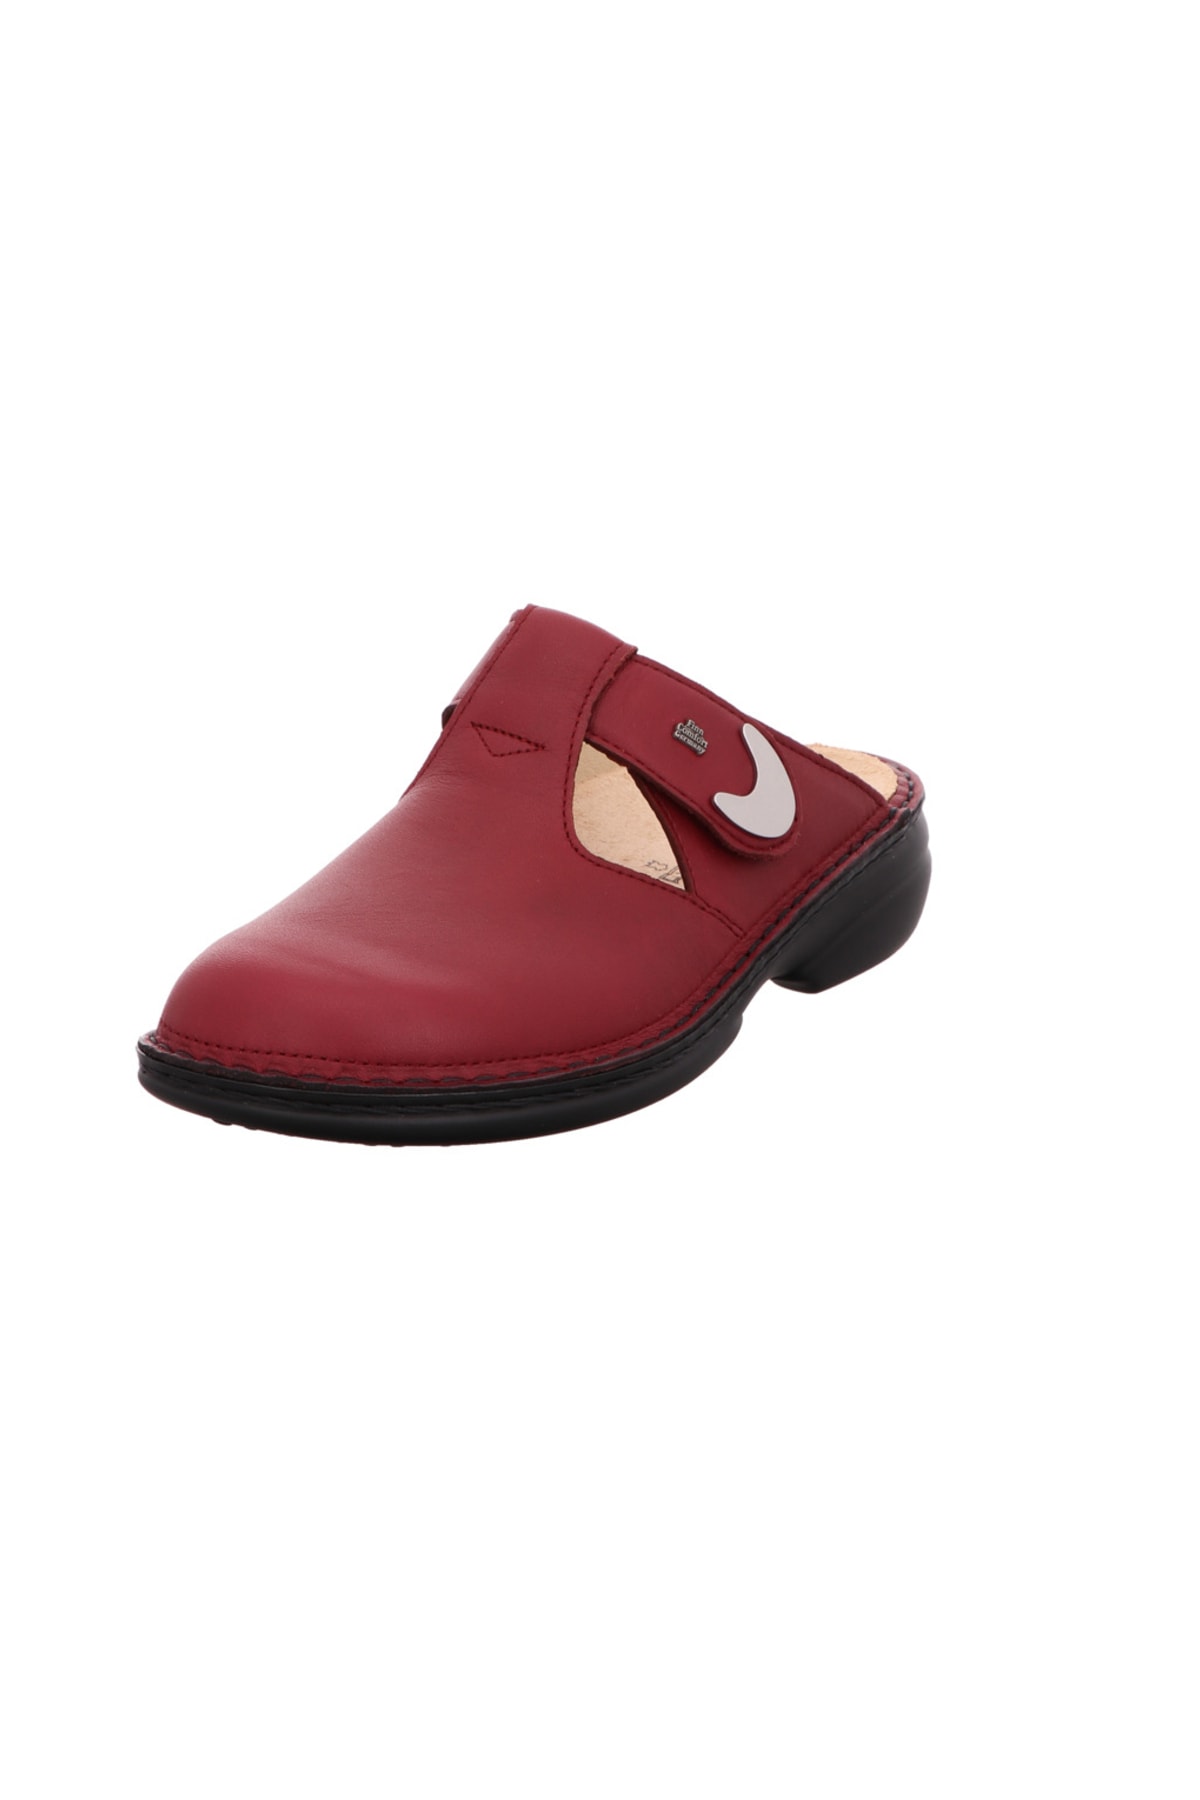 Finn Comfort Sandalette Rot Flacher Absatz Fast ausverkauft